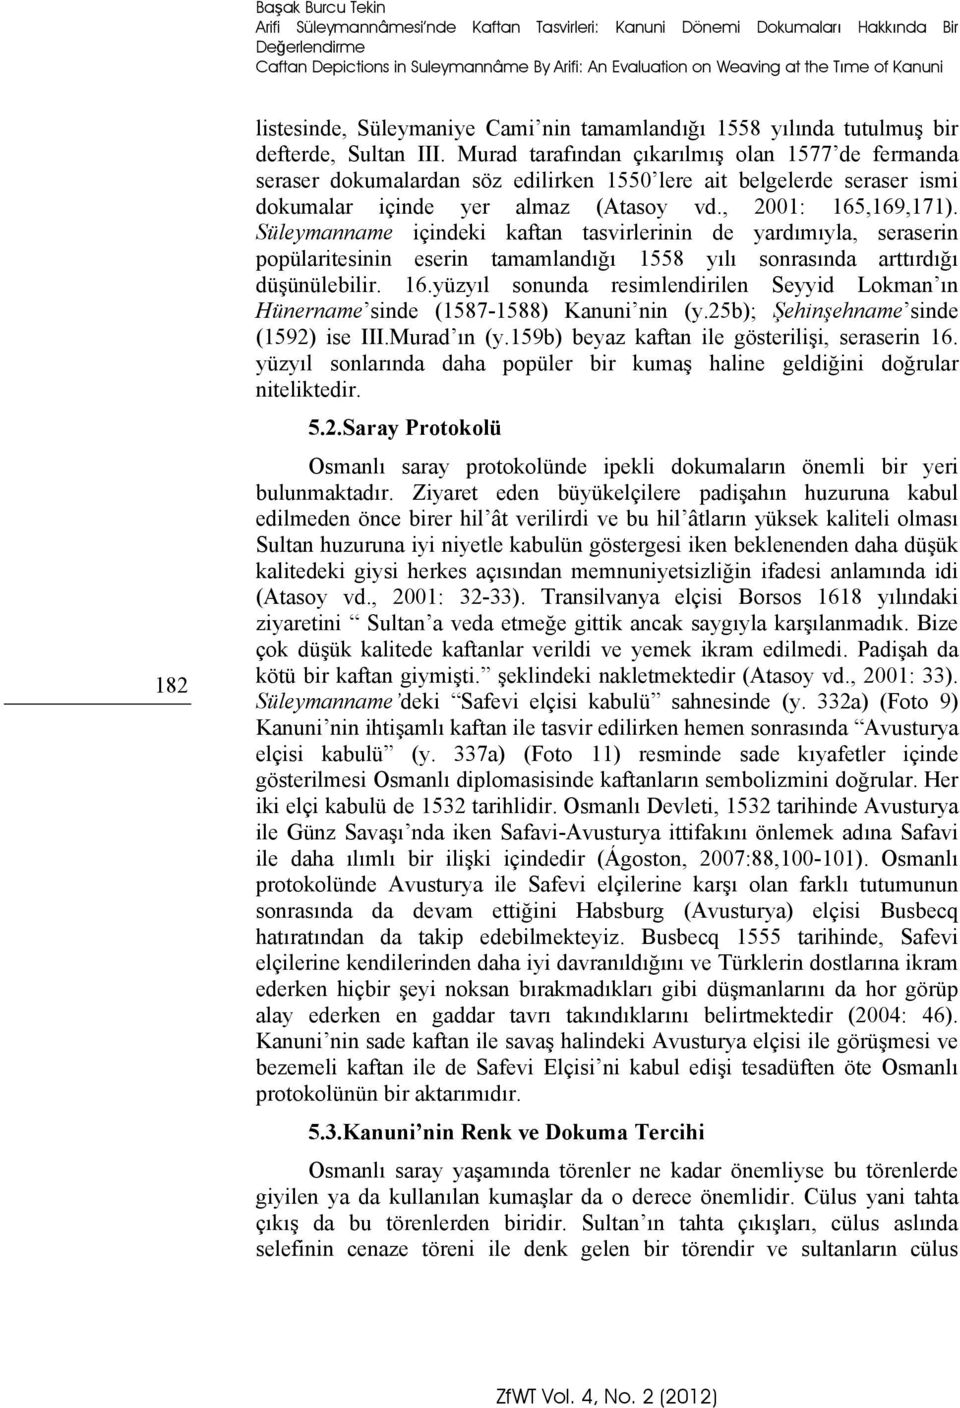 Murad tarafından çıkarılmış olan 1577 de fermanda seraser dokumalardan söz edilirken 1550 lere ait belgelerde seraser ismi dokumalar içinde yer almaz (Atasoy vd., 2001: 165,169,171).